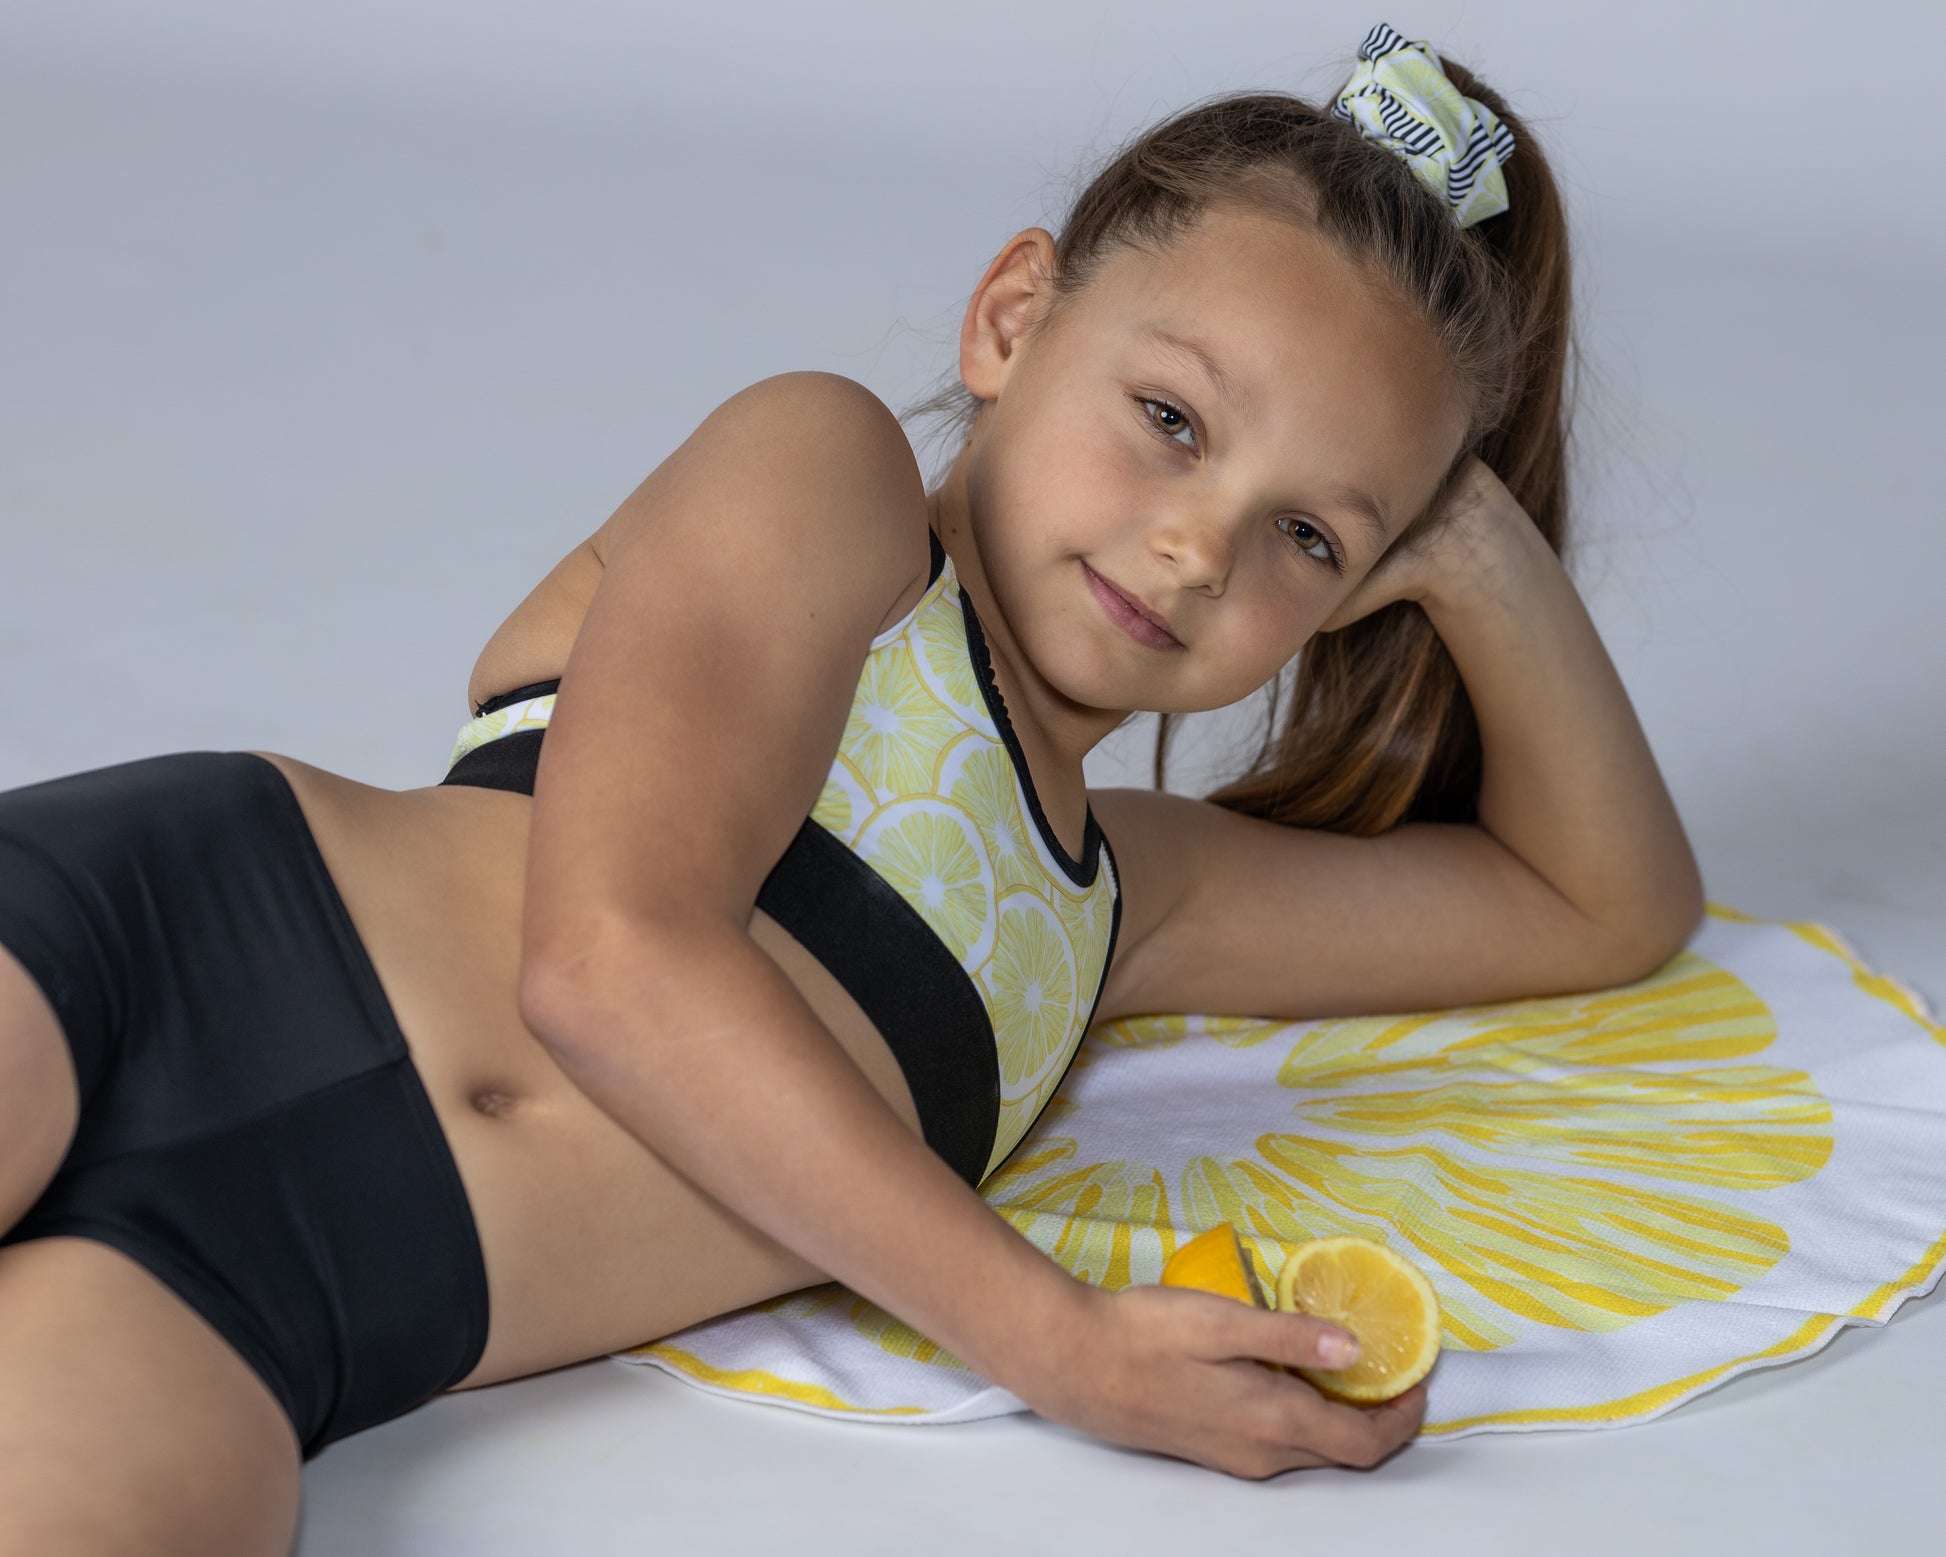 Sweat Towel Gymnastics Leotards Australia USA UK NZ Dream Pattern Athlete Gymnast Dancer Diver Swimming Kids Children